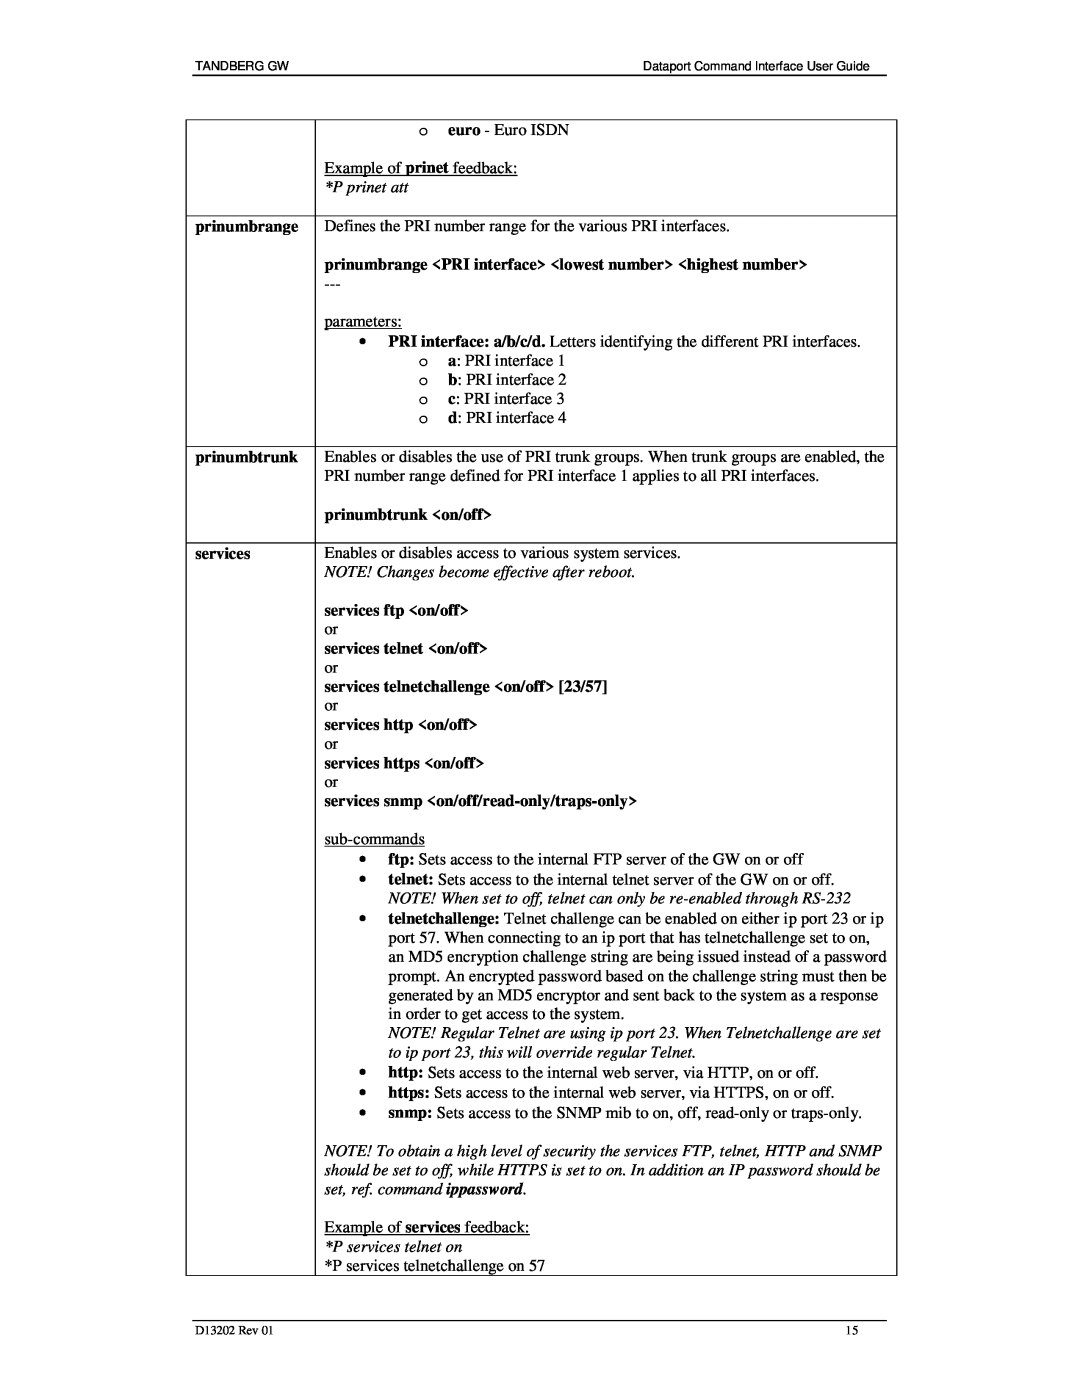 TANDBERG D13202 manual prinumbrange 